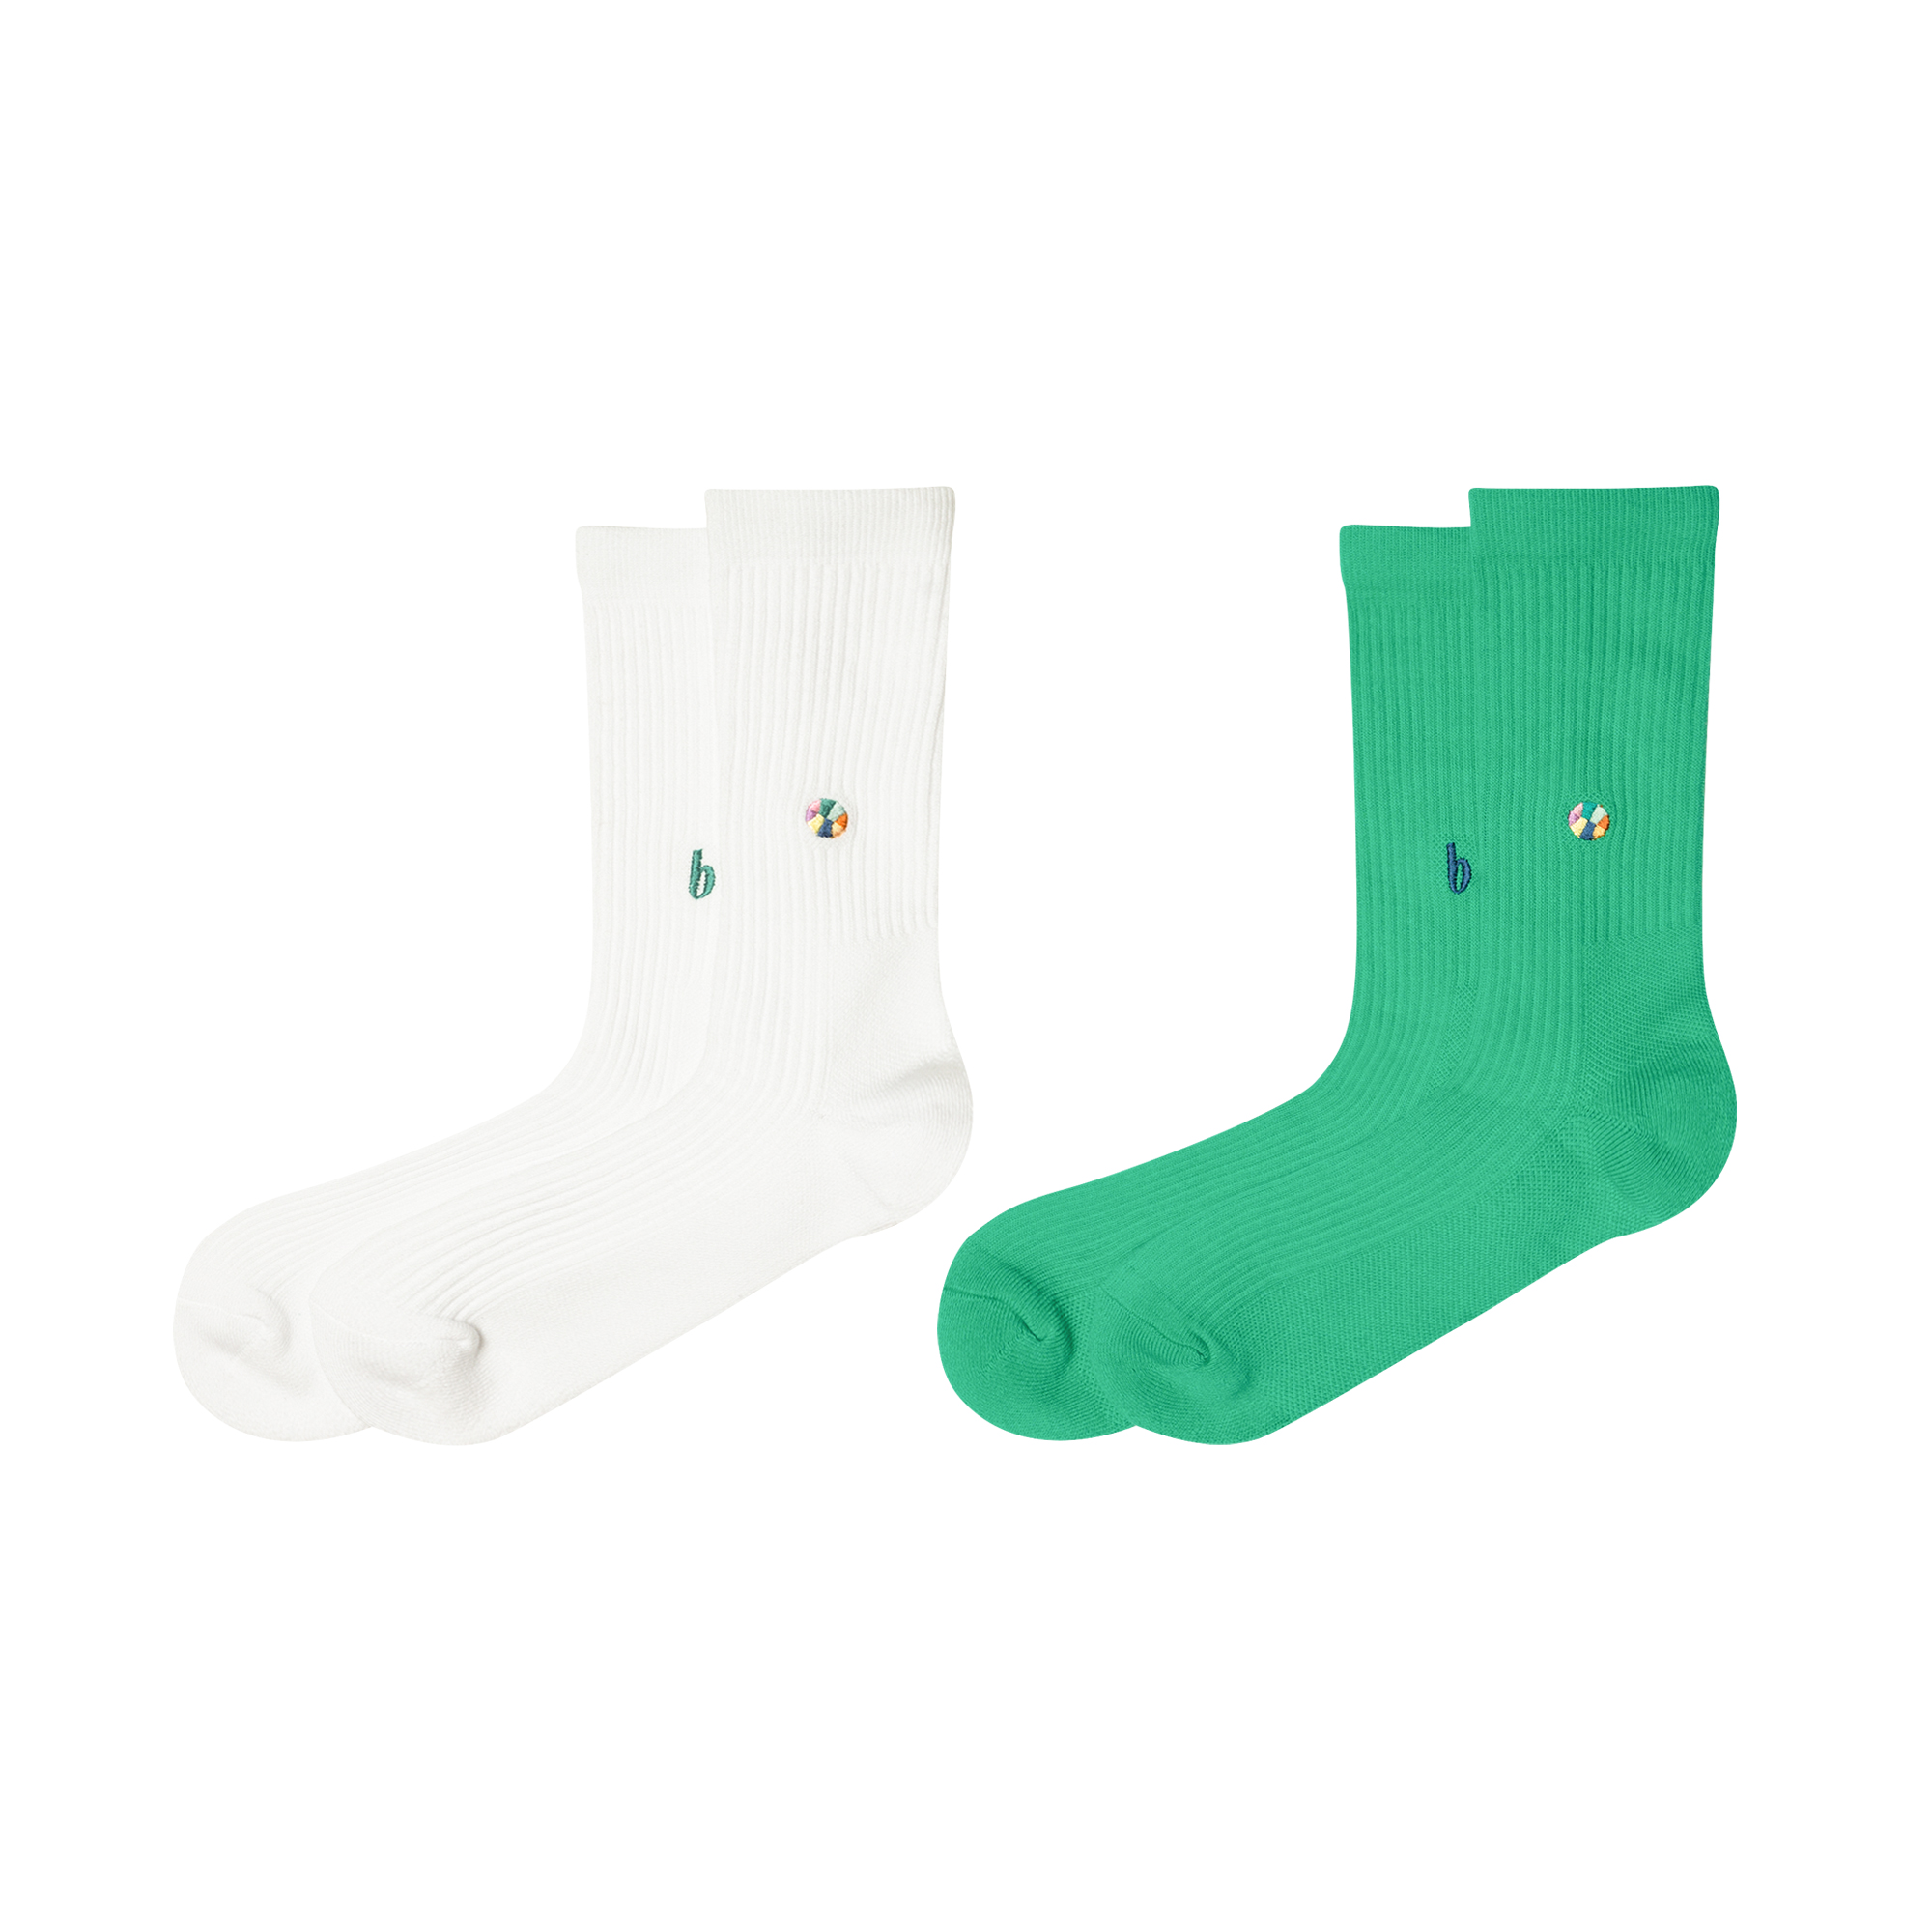 b 2-Pack Socks (white, green)